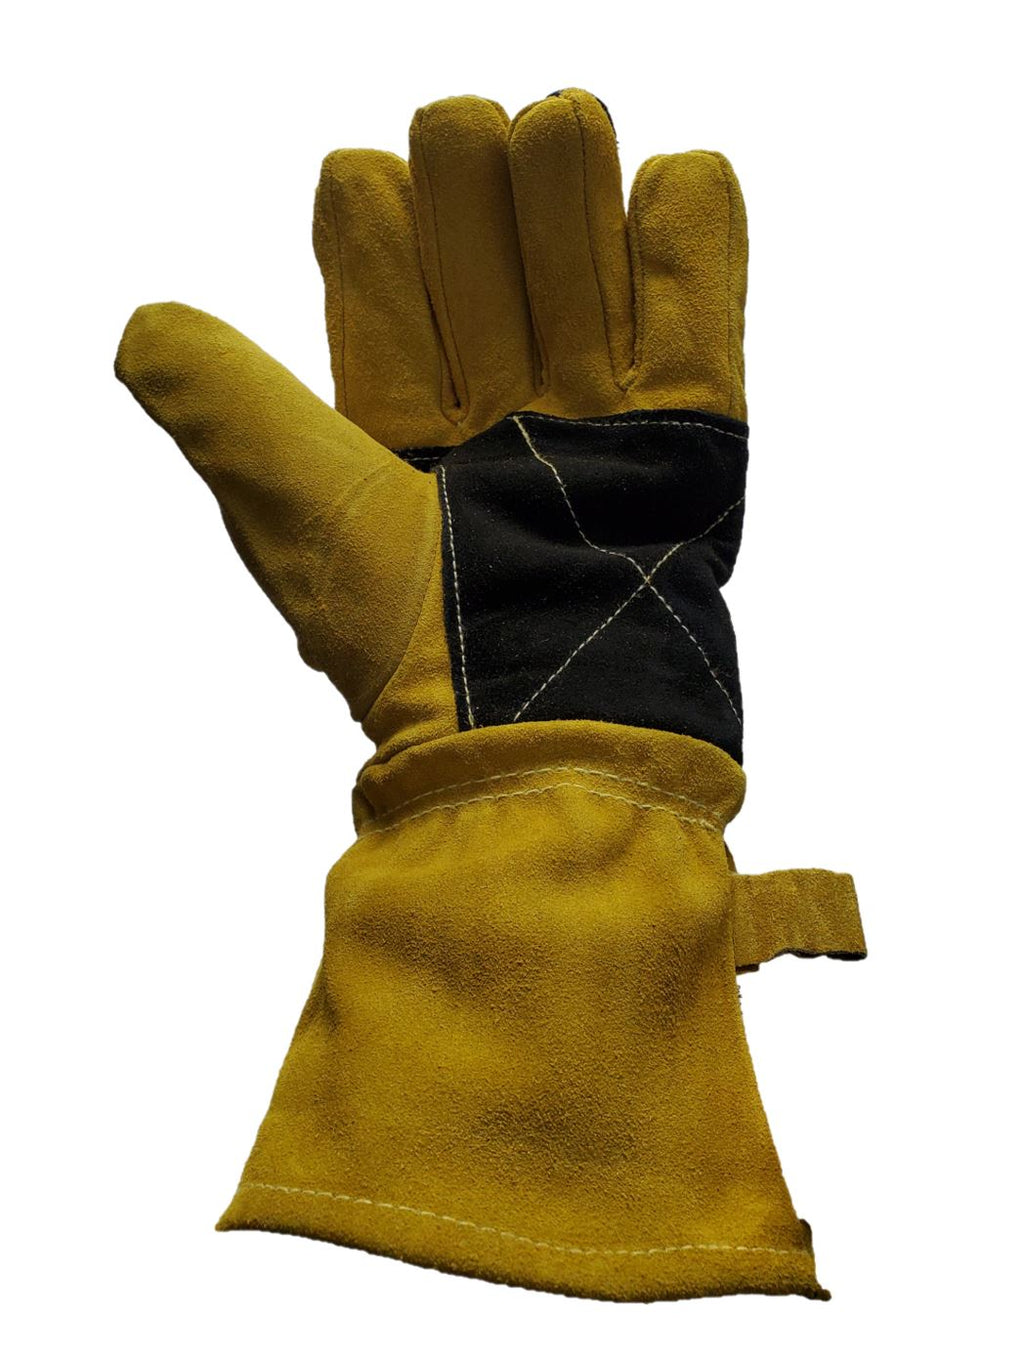 Leather Re-inforced Heavy Duty Welding Gloves - Yellow